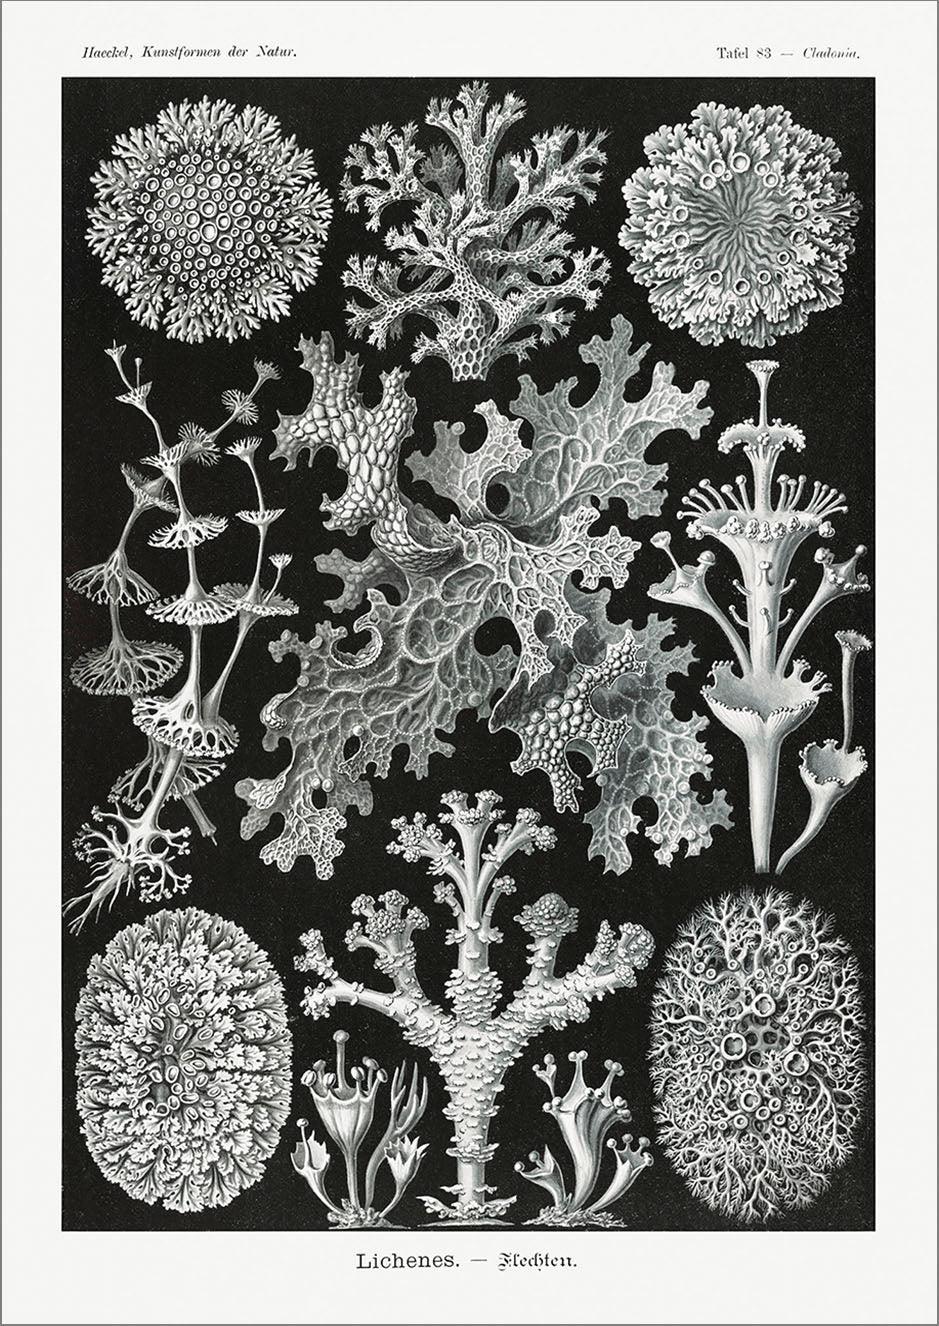 AMMONITE & LICHEN PRINTS: Vintage Artforms of Nature by Ernst Haeckel - Pimlico Prints